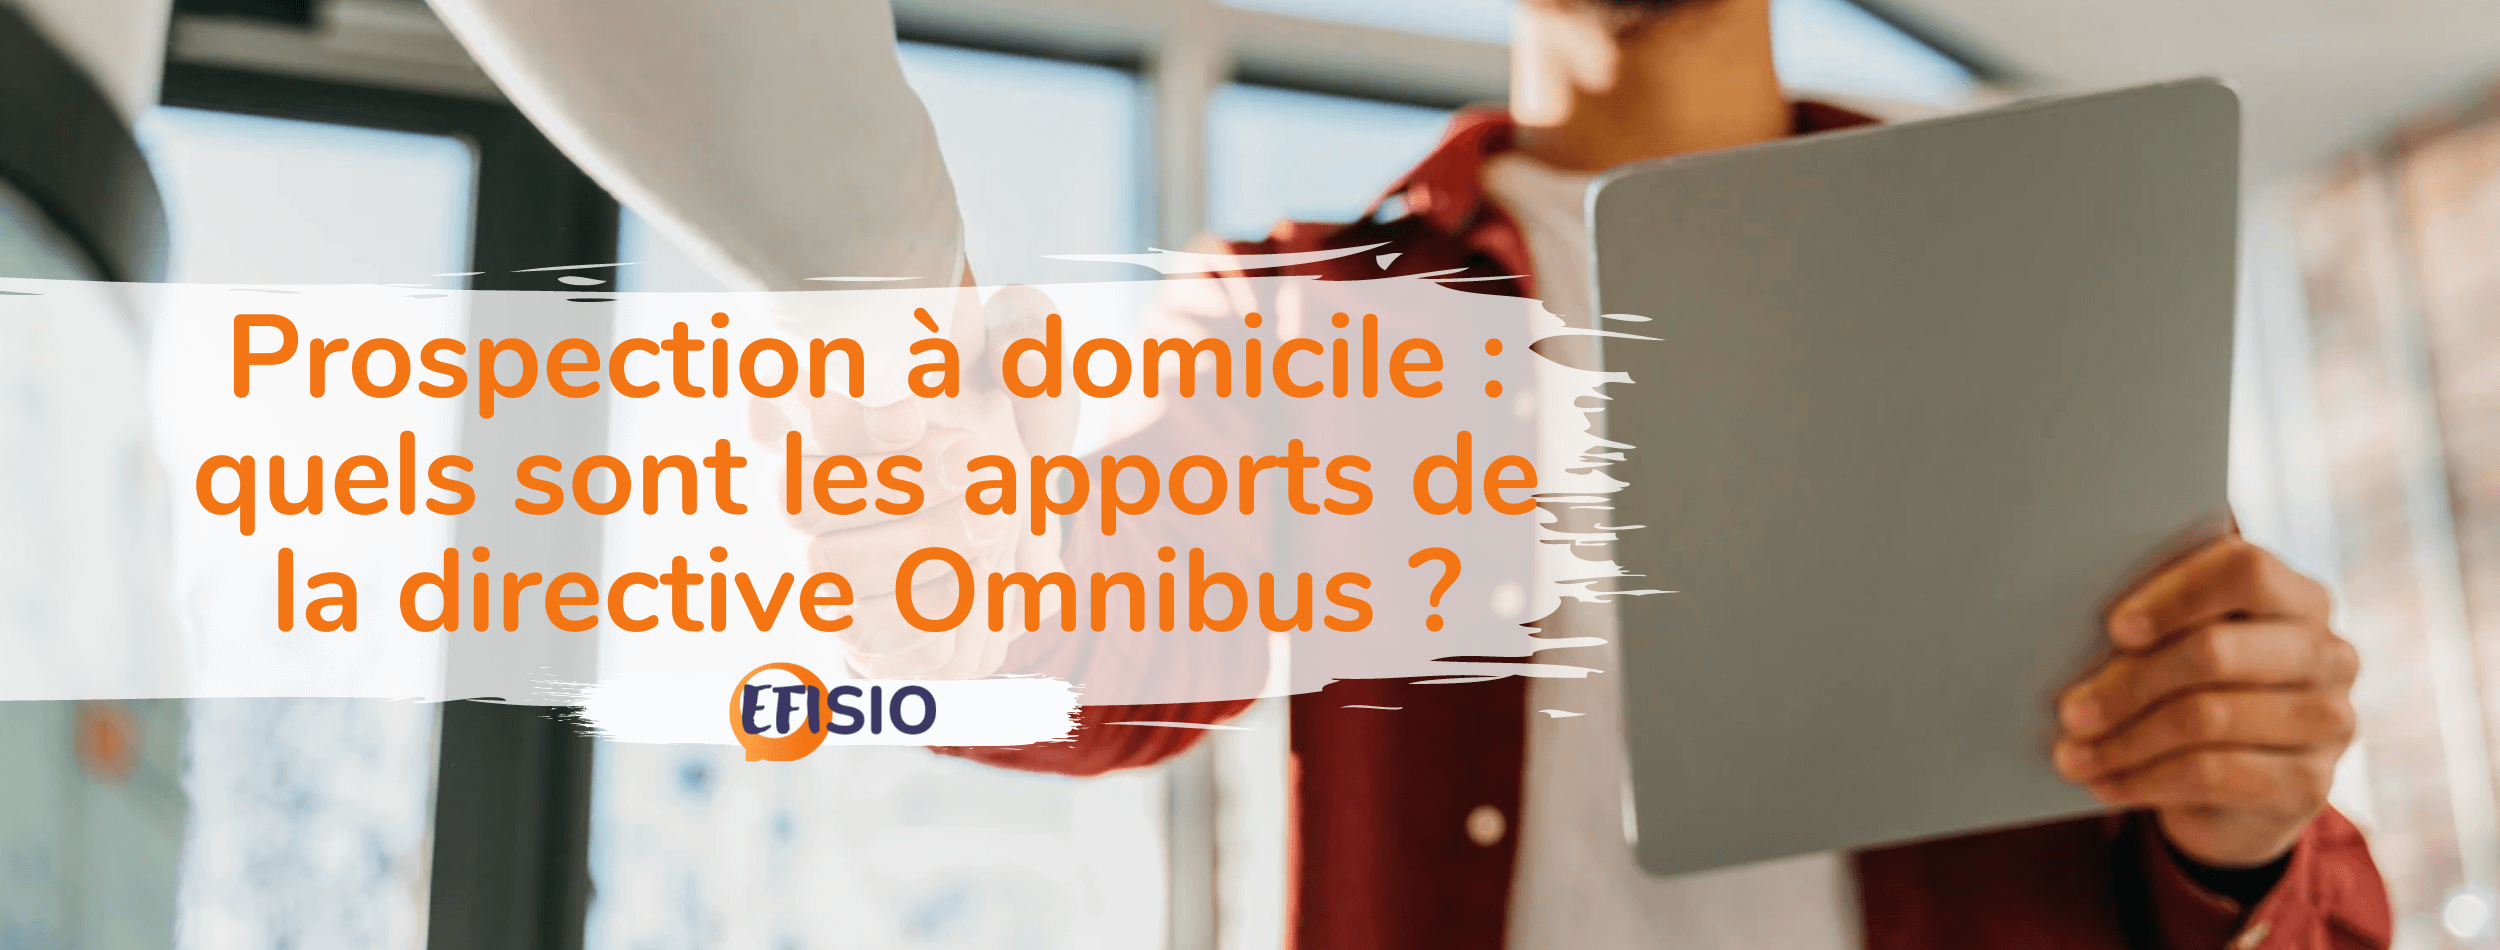 Prospection à domicile : quels sont les apports de la directive Omnibus ?